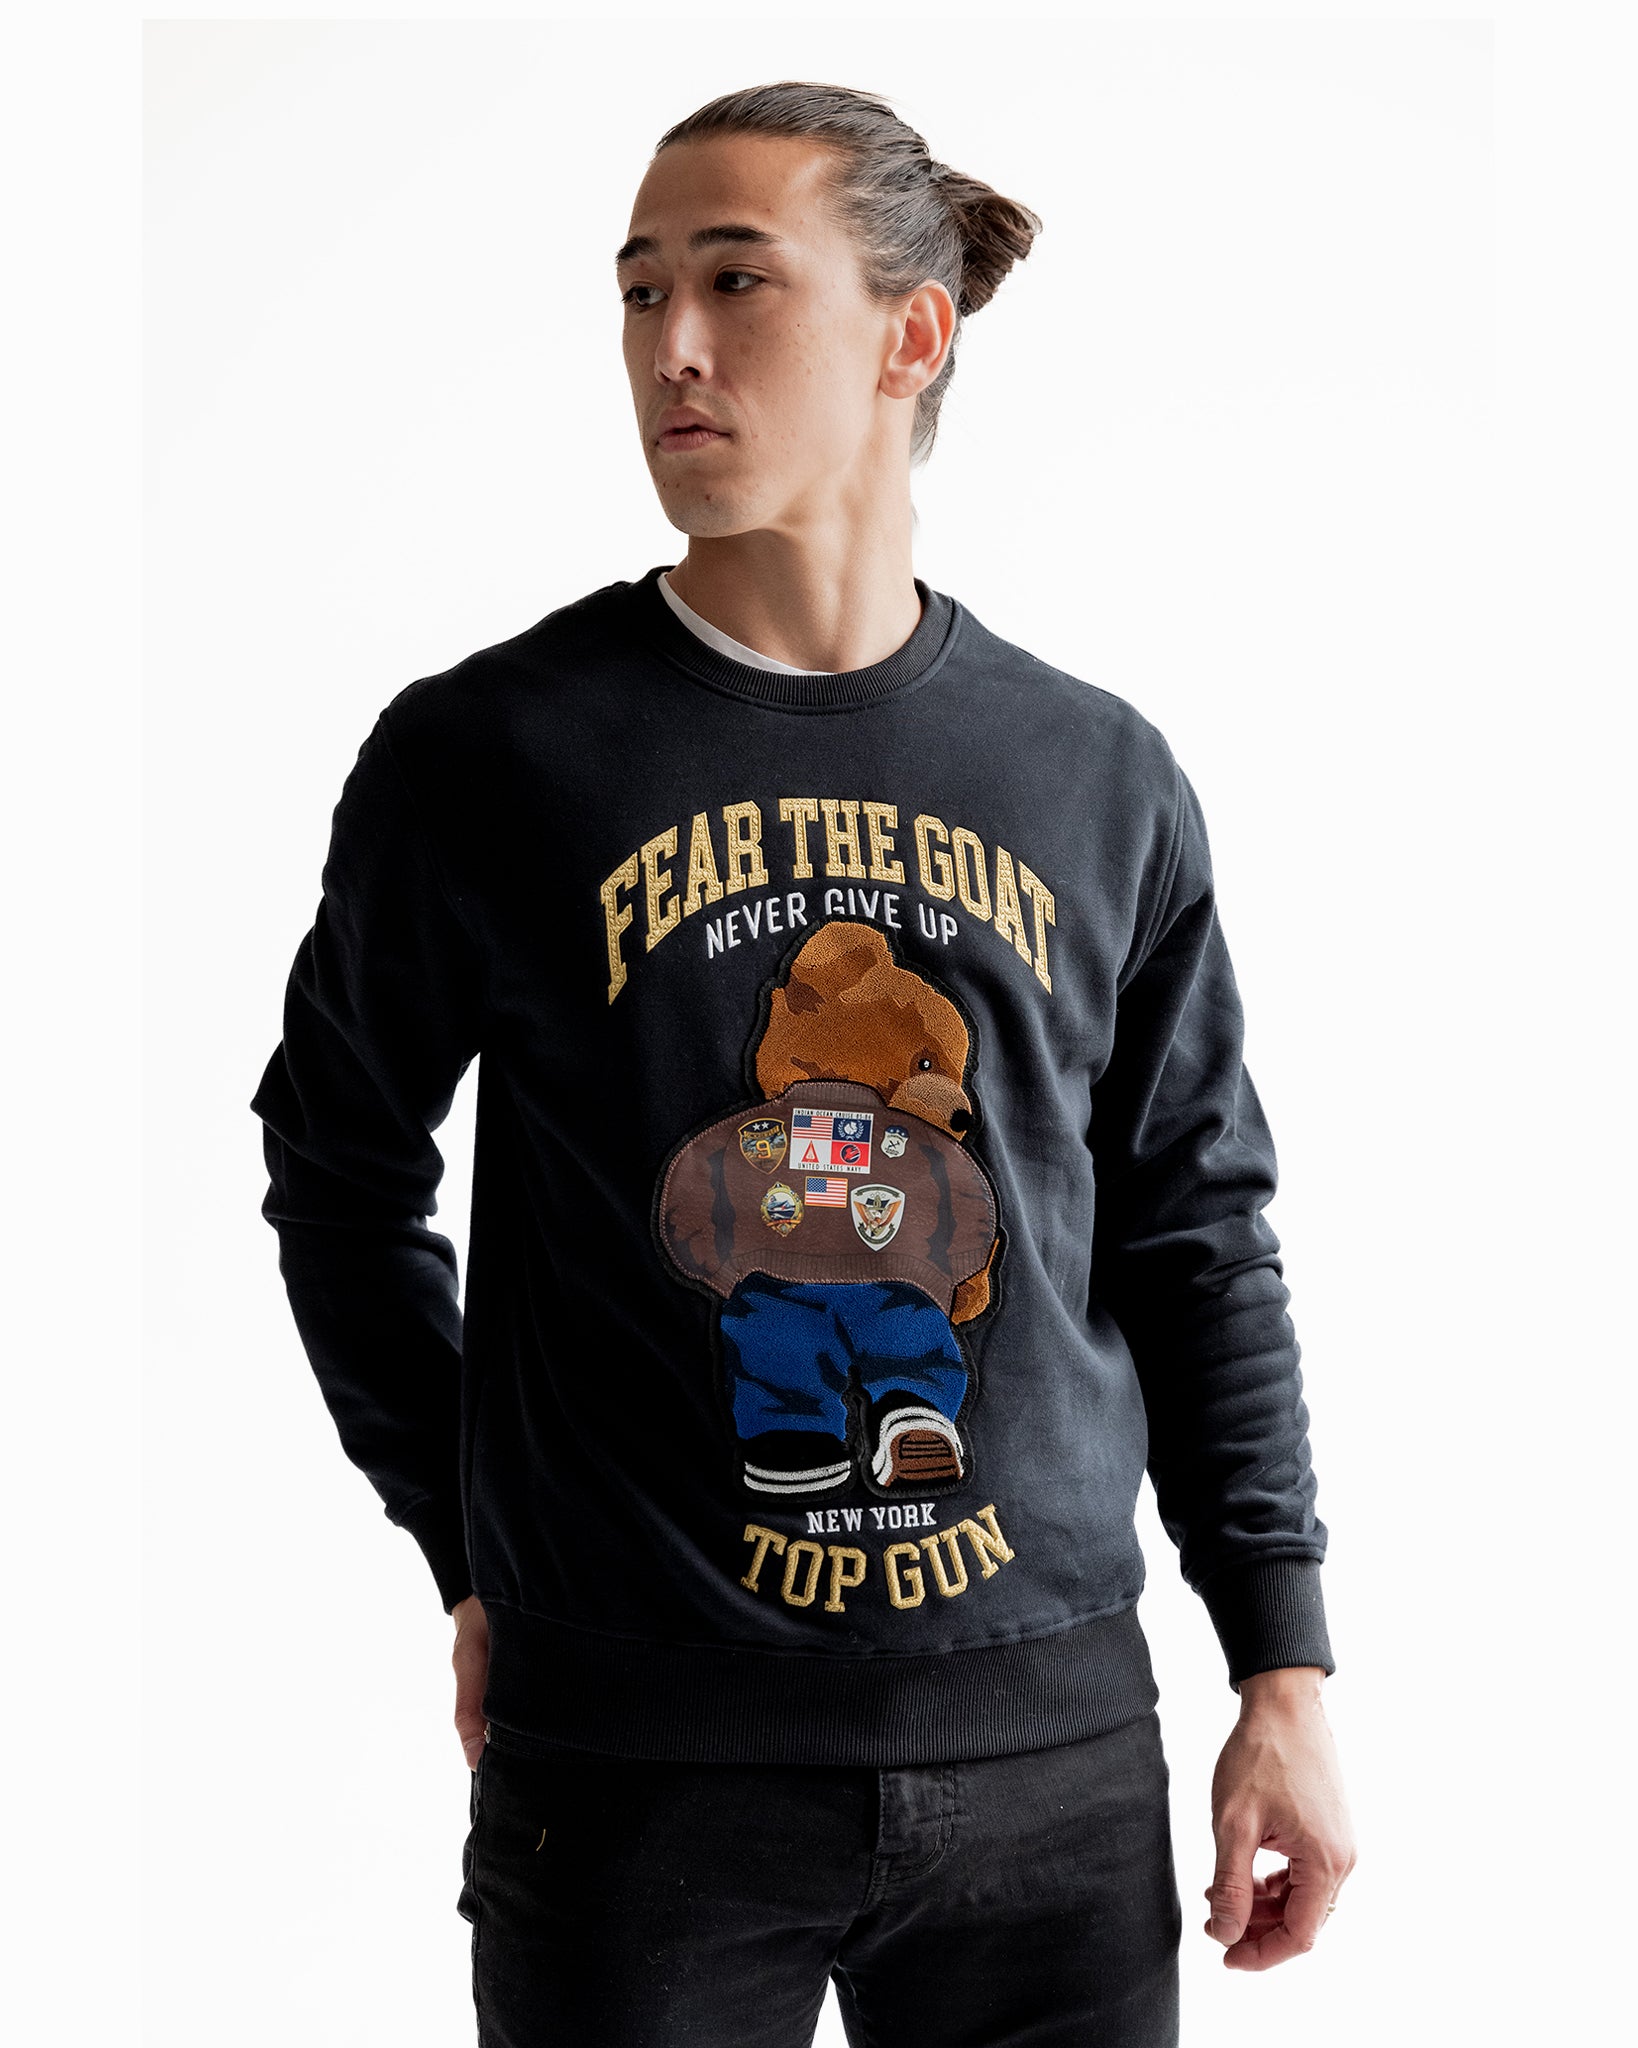 Men's Hoodies & Sweatshirts | The Top Gun® Official Store – Top Gun Store